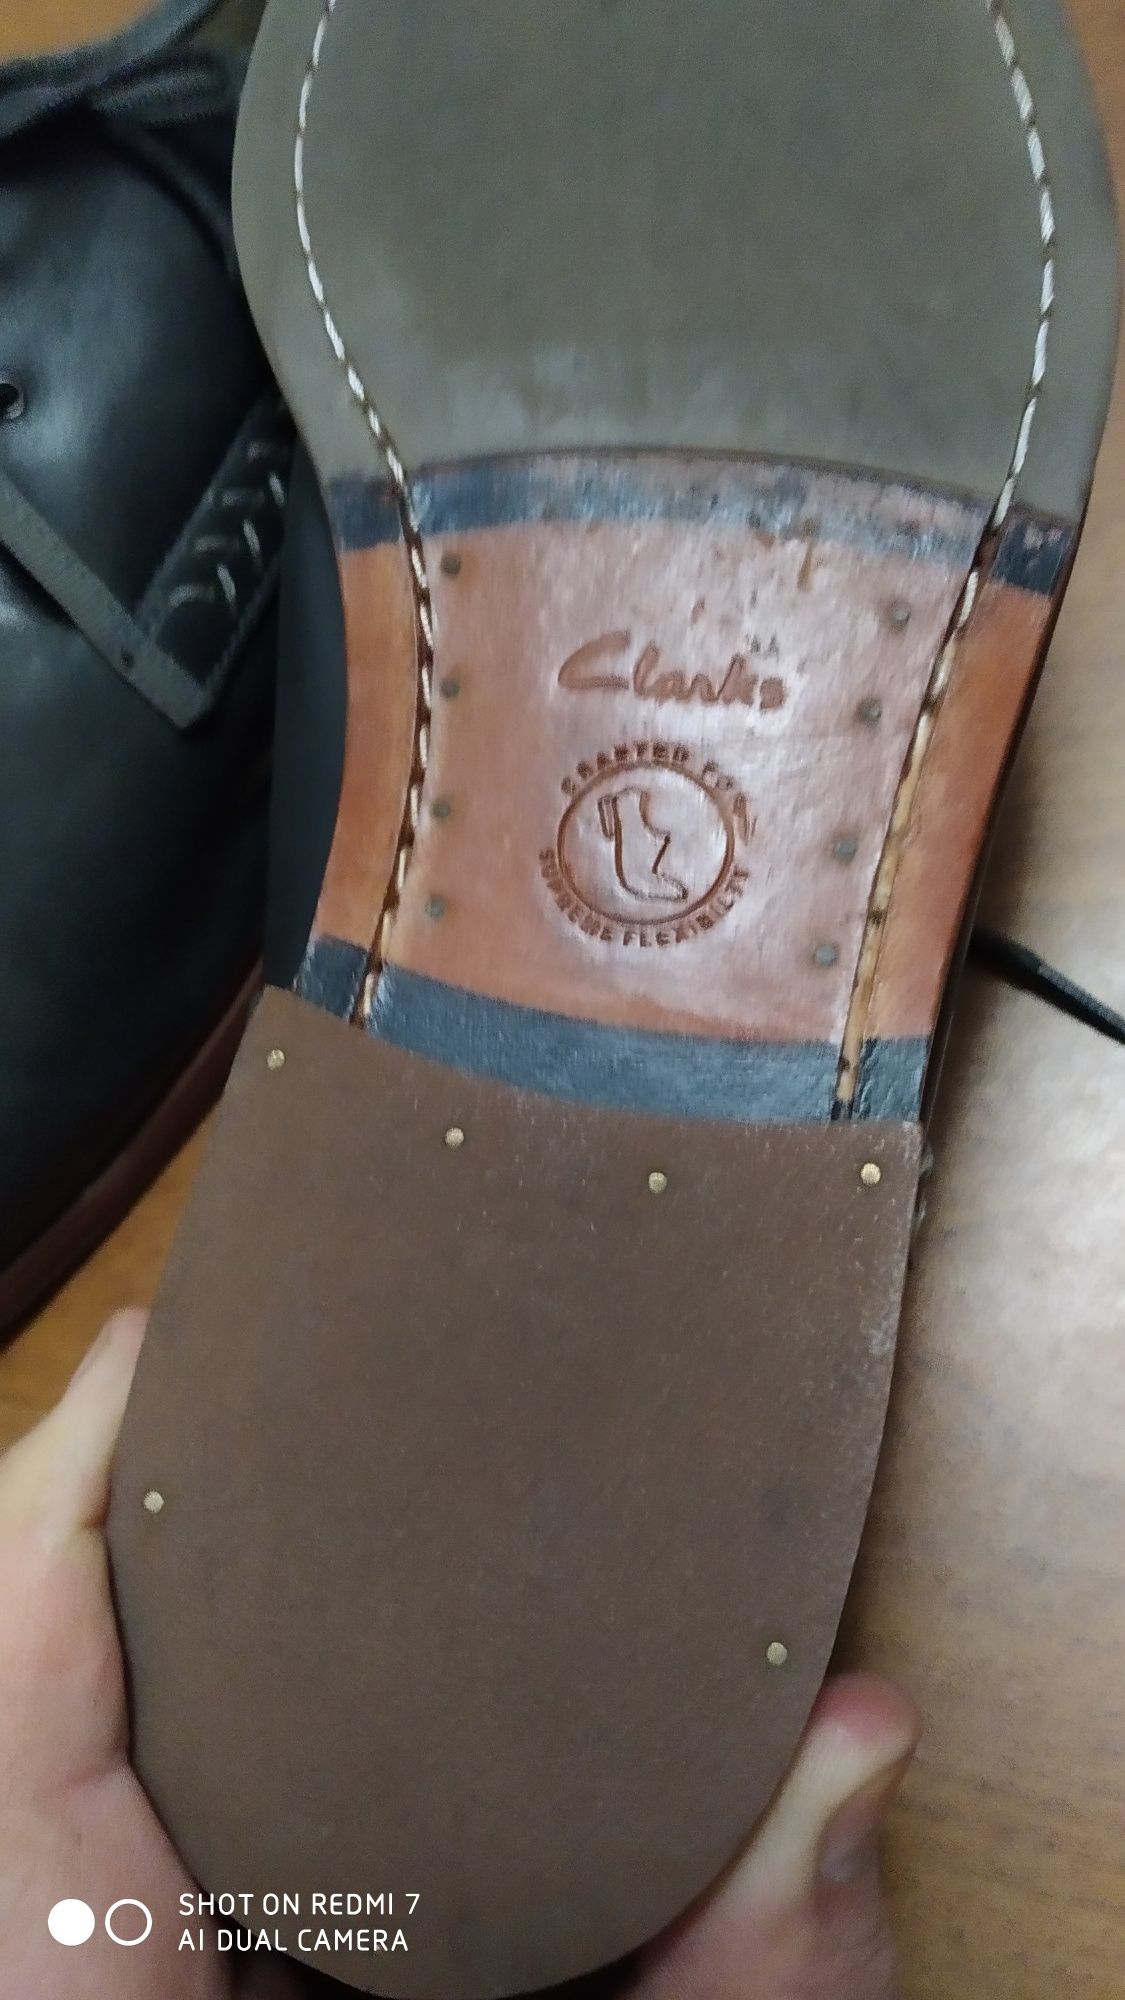 Туфли фирмы Clarks кожаные. В очень хорошем состоянии.